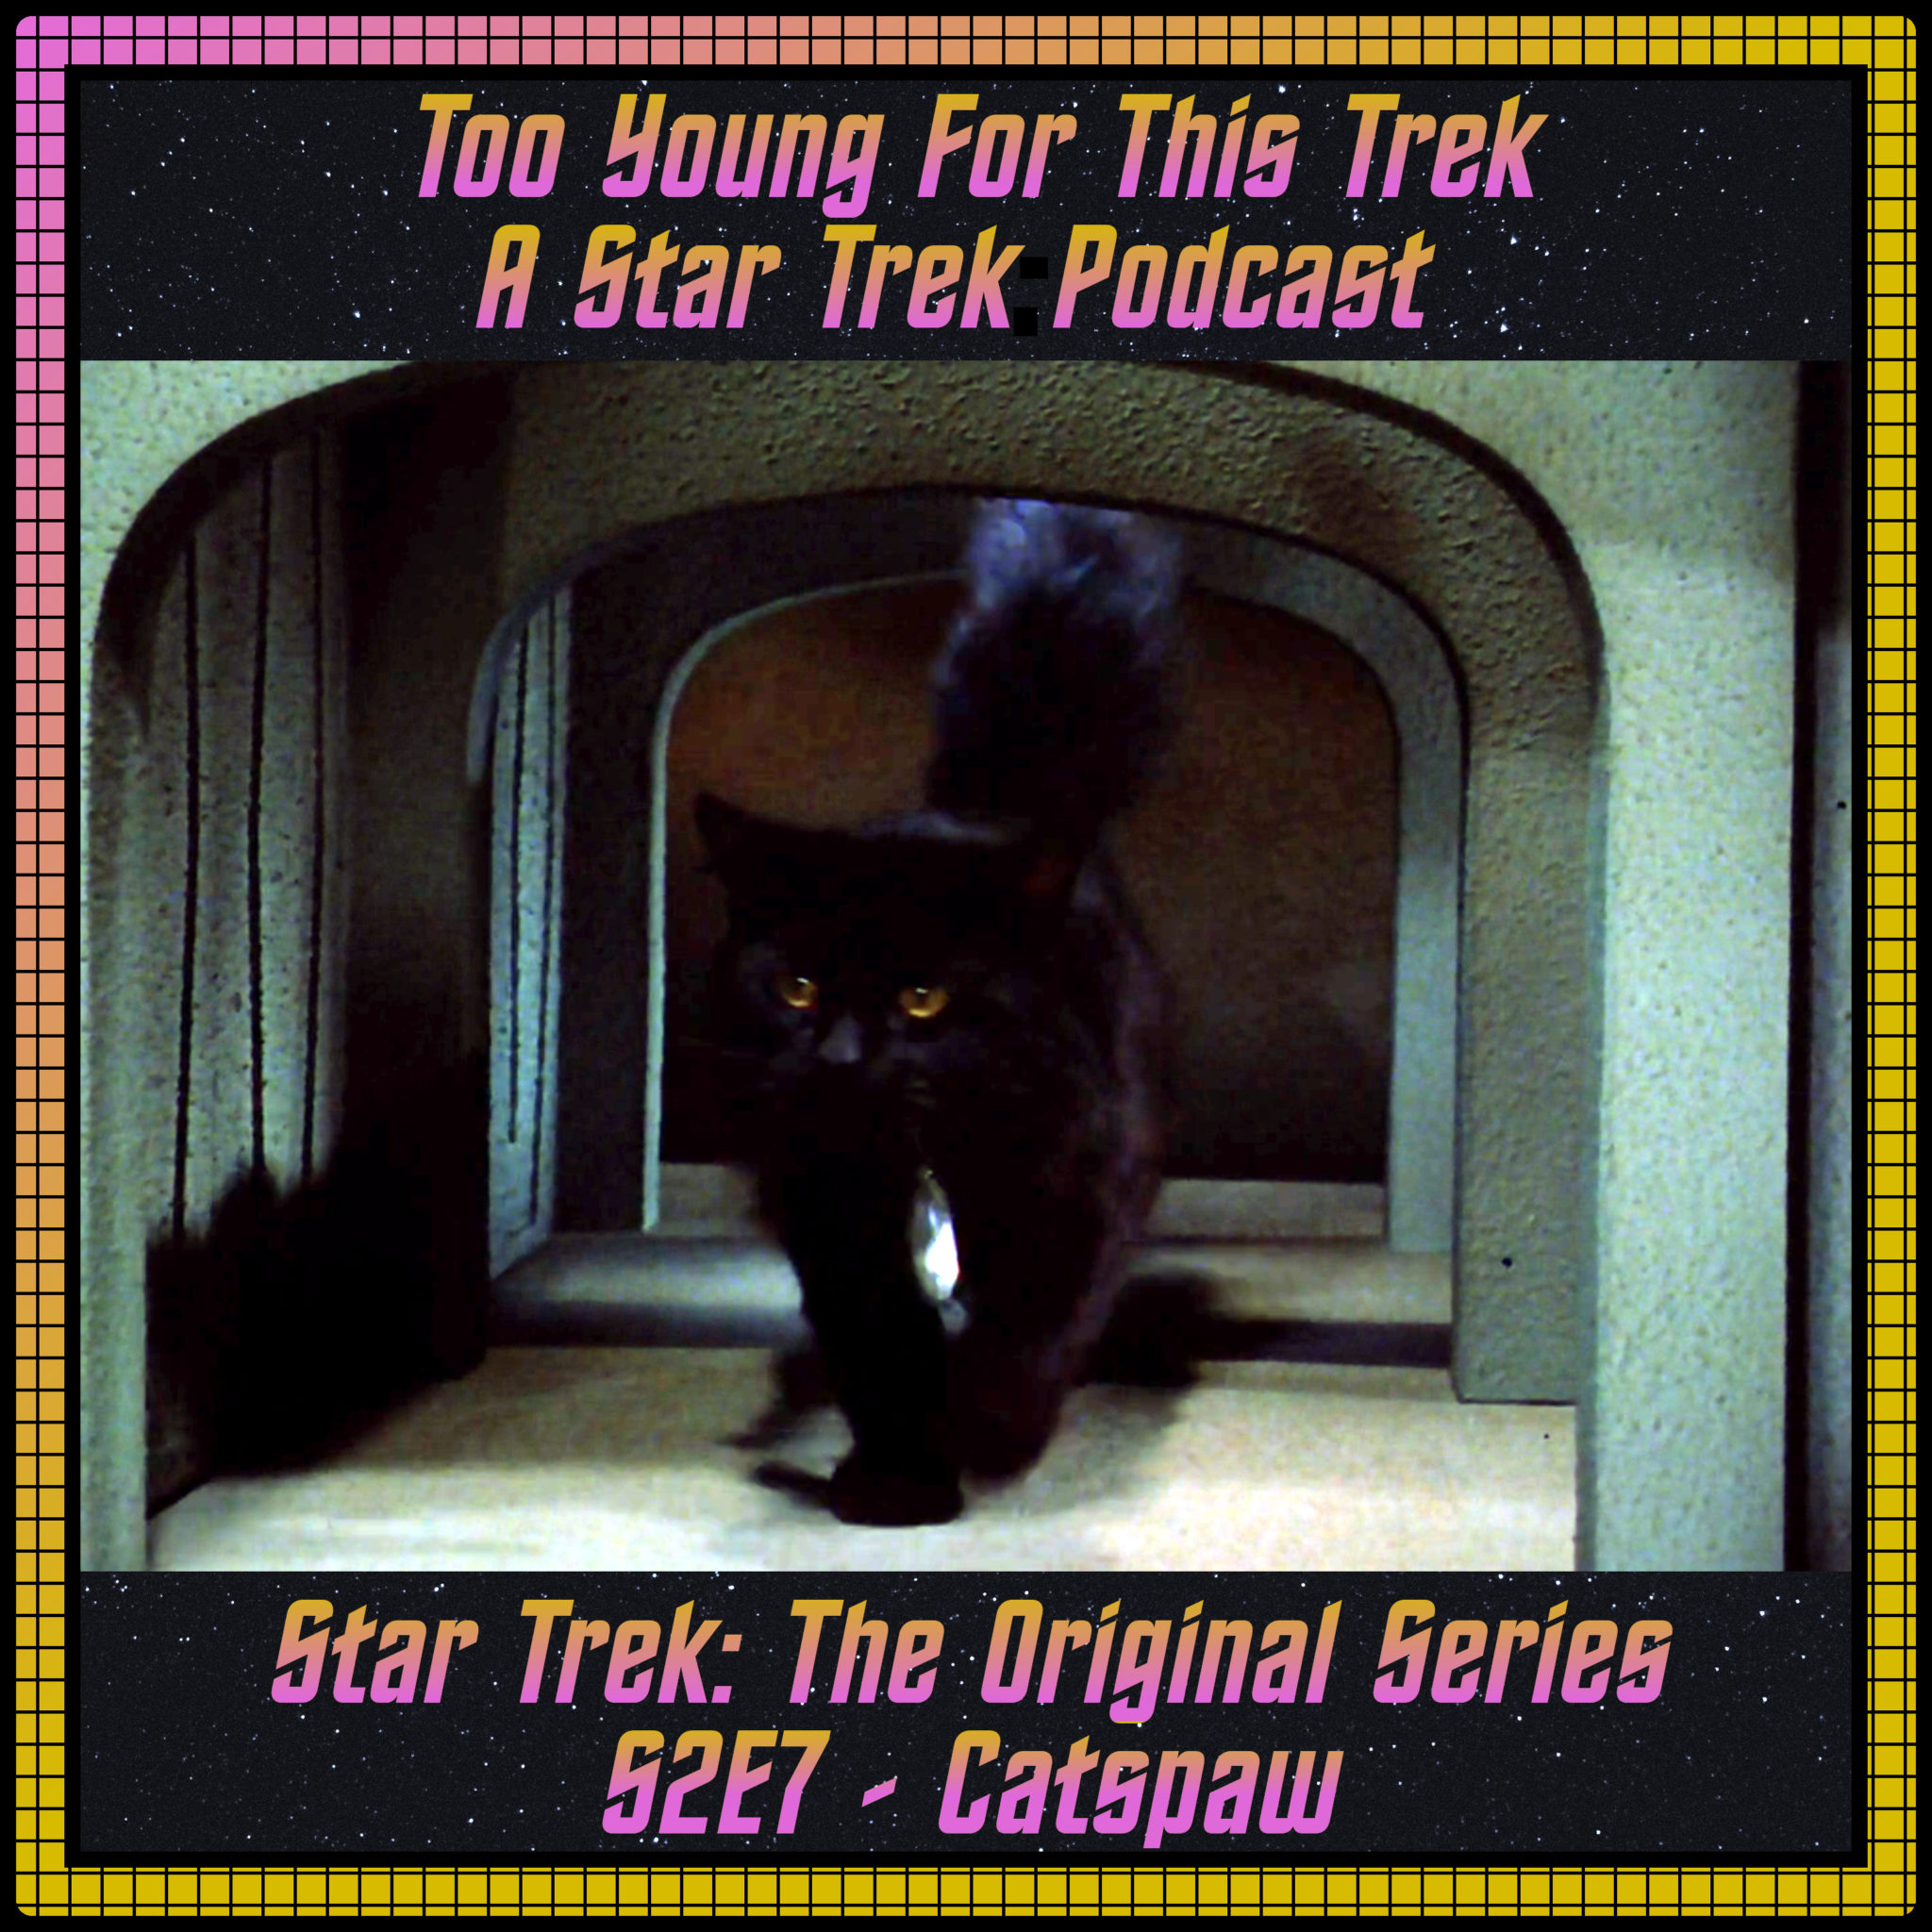 Star Trek: The Original Series S2E7 - Catspaw